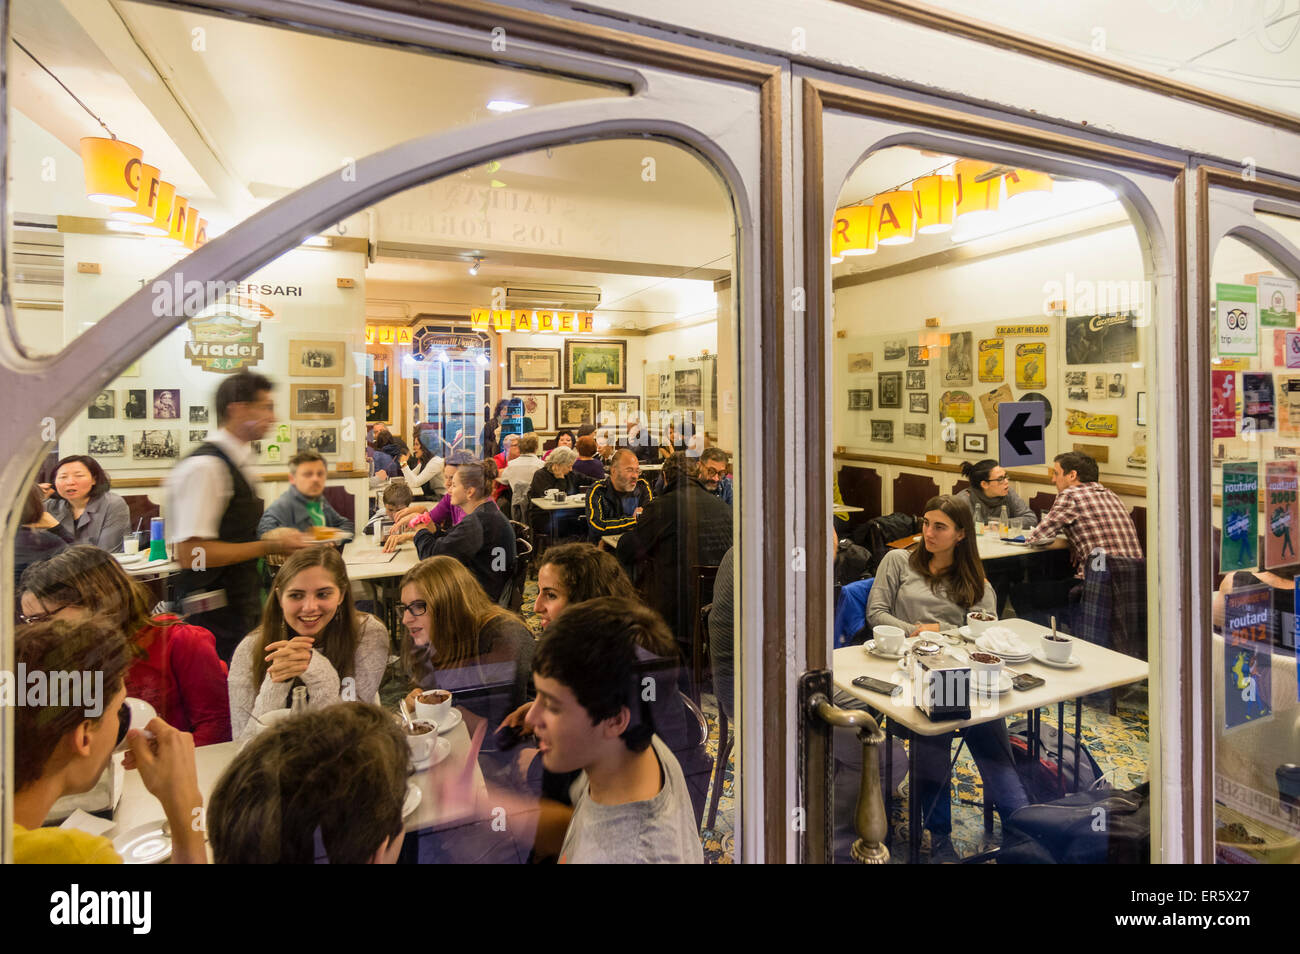 La Granja Viader, Milk Bar, Cafe, el Raval, Barcelona, España Foto de stock